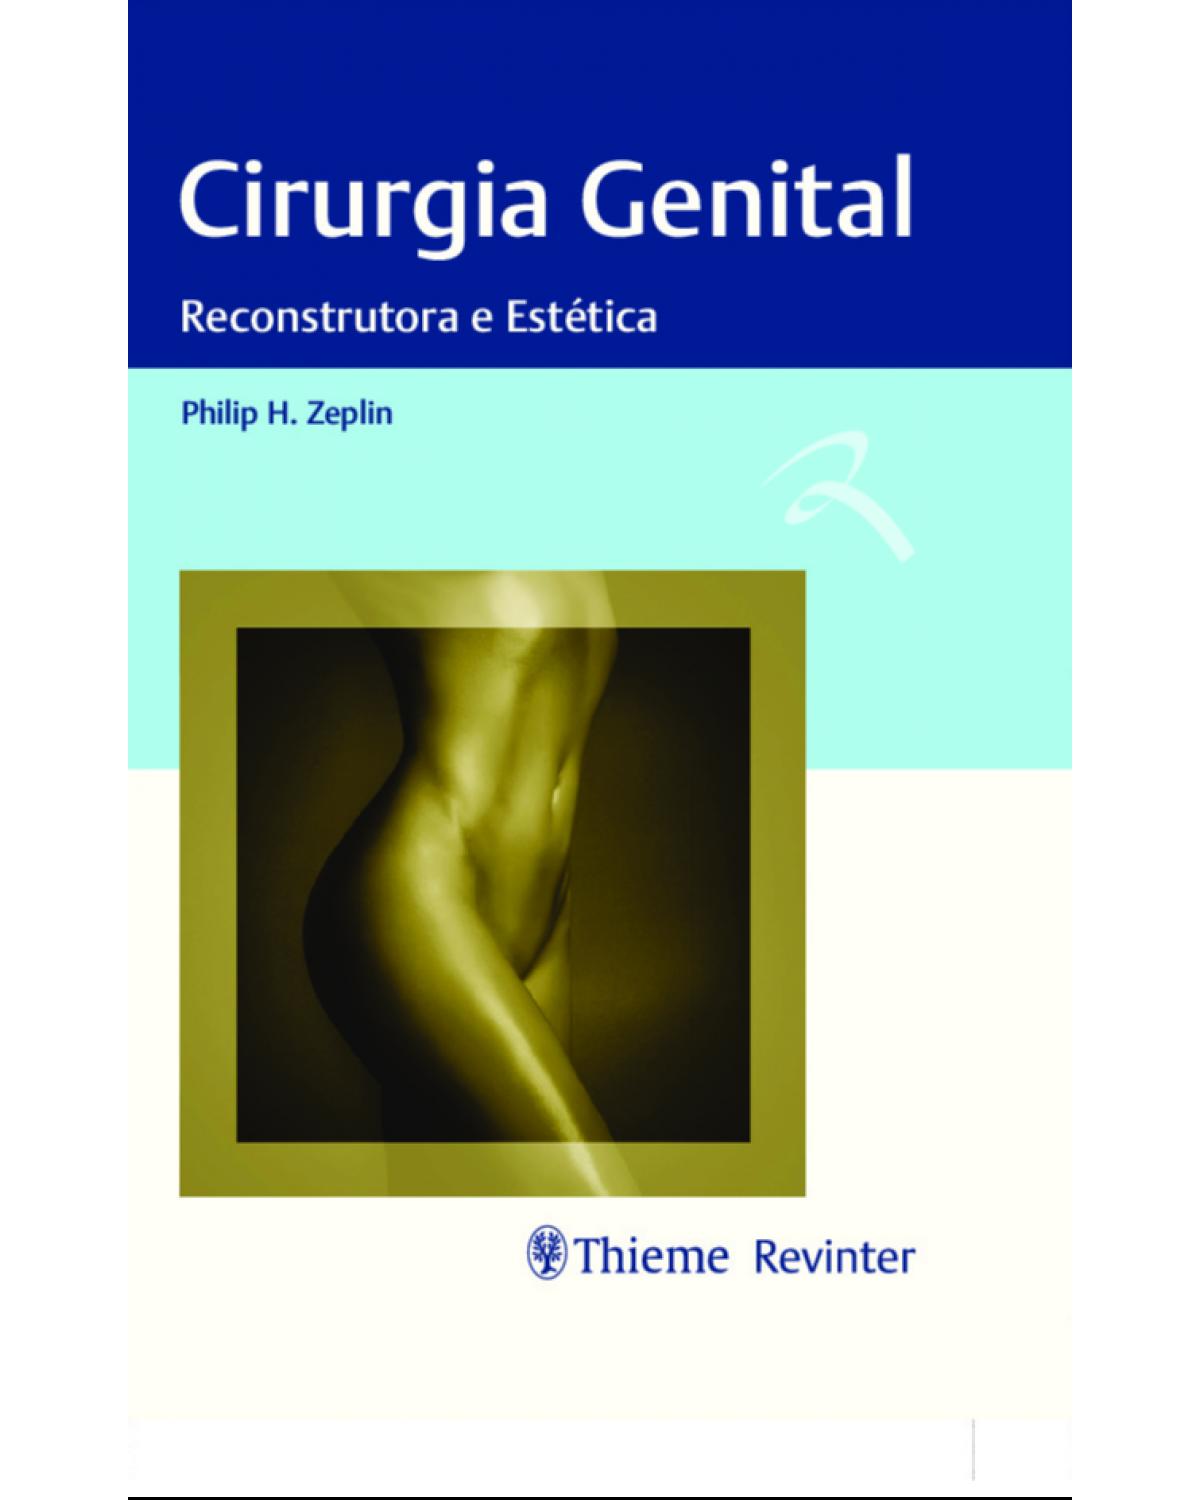 Cirurgia genital - reconstrutora e estética - 1ª Edição | 2020